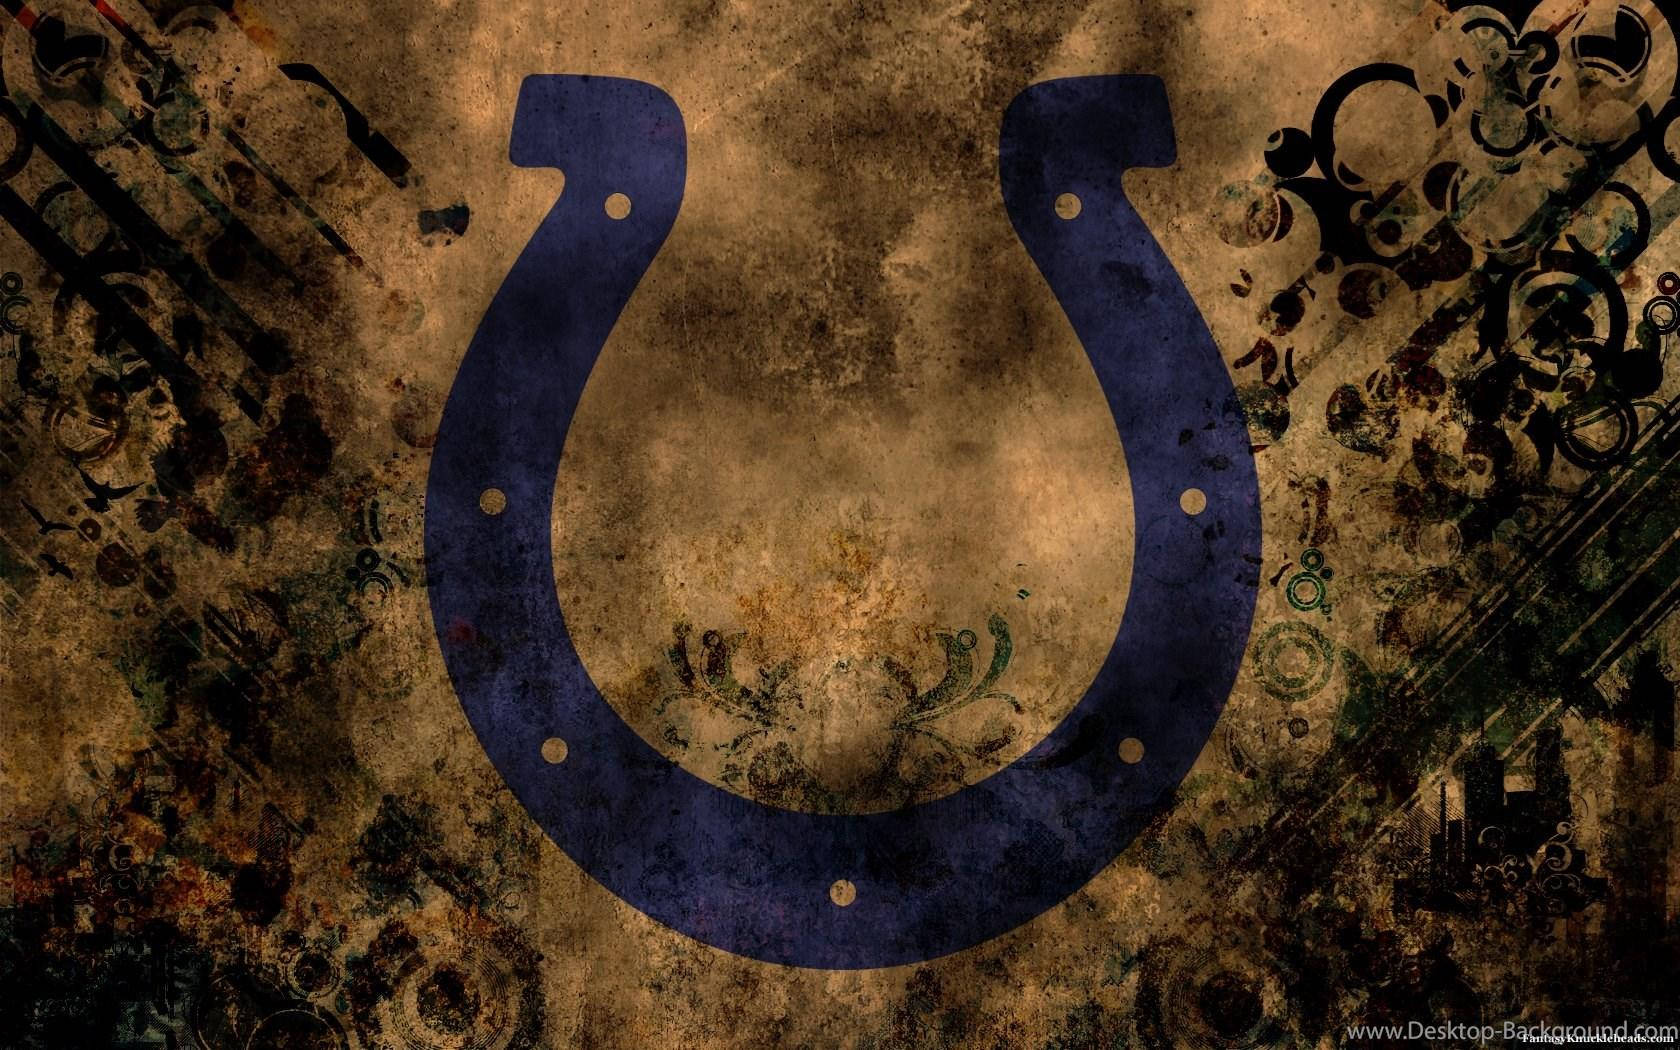 Indianapolis Colts Logo Wallpaper